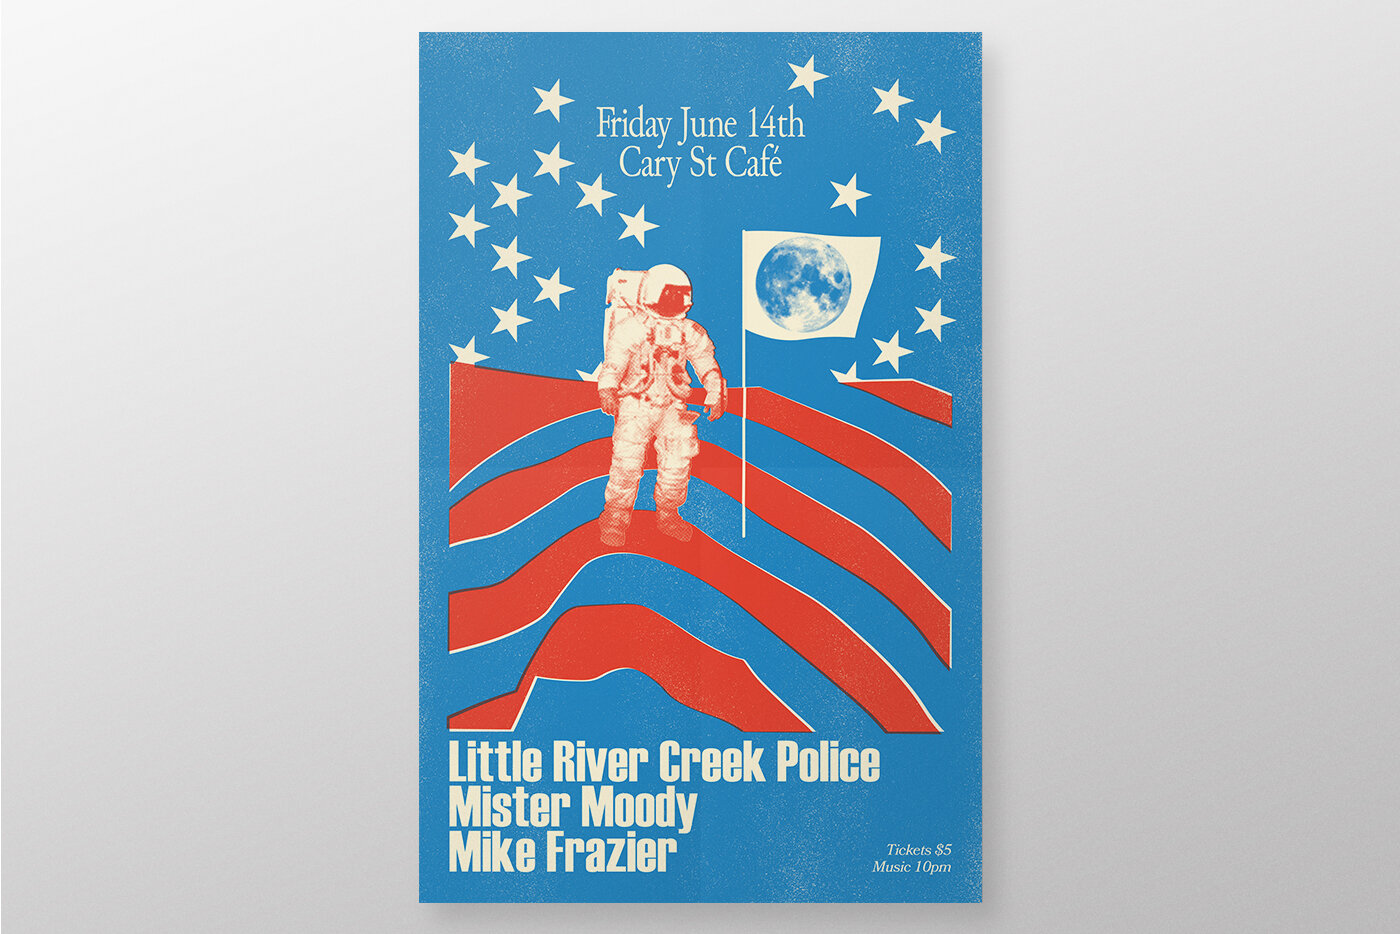 Little River Creek Police Poster Design